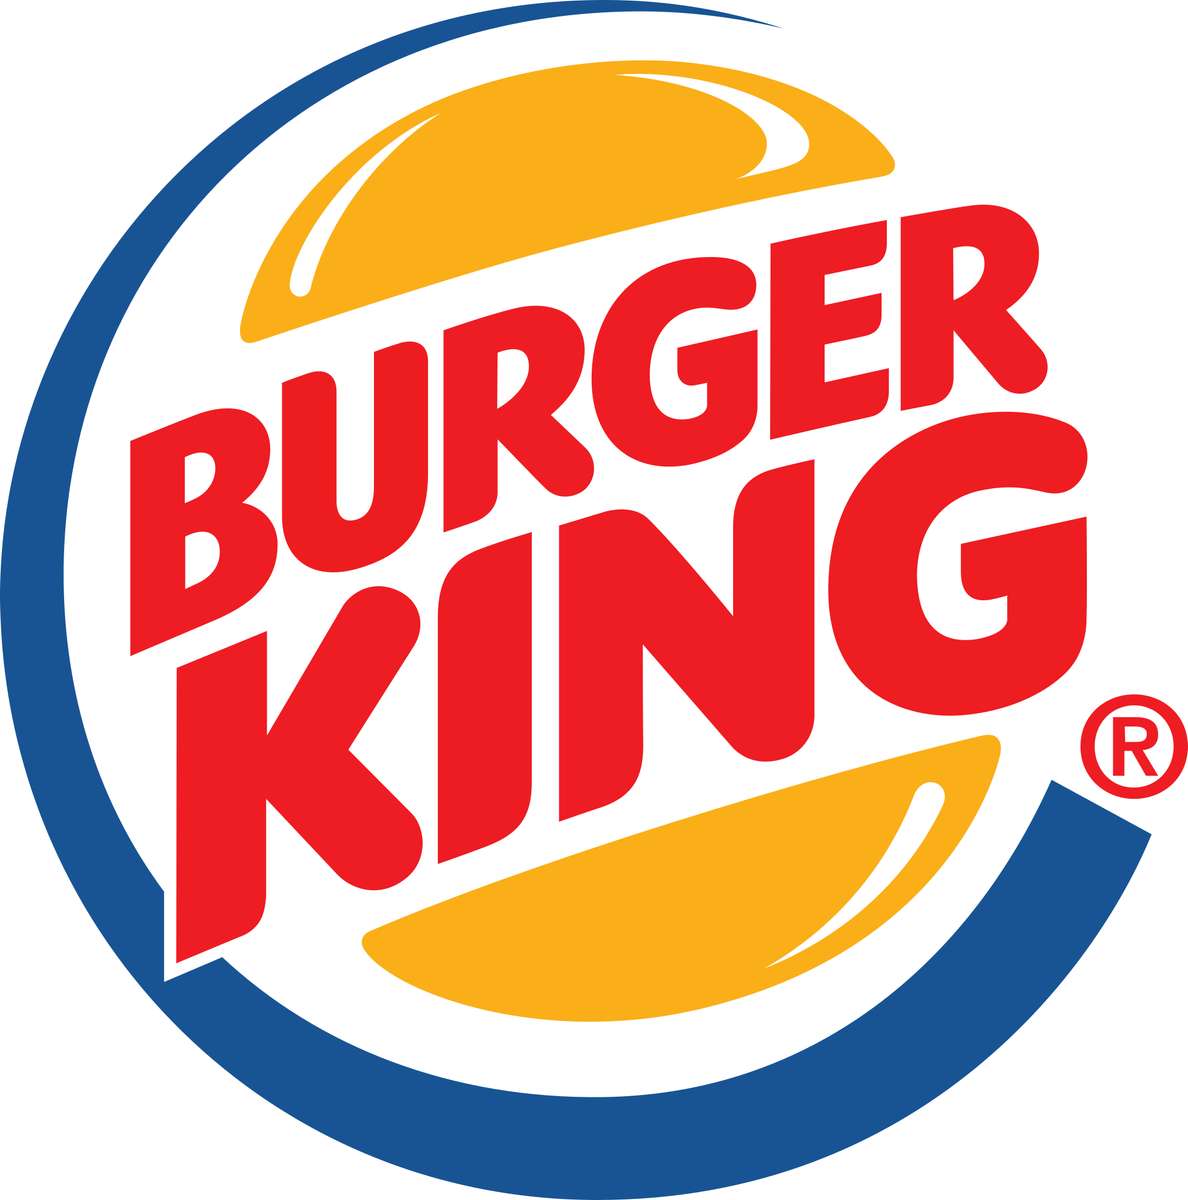 Burger king kérdés puzzle online fotóról